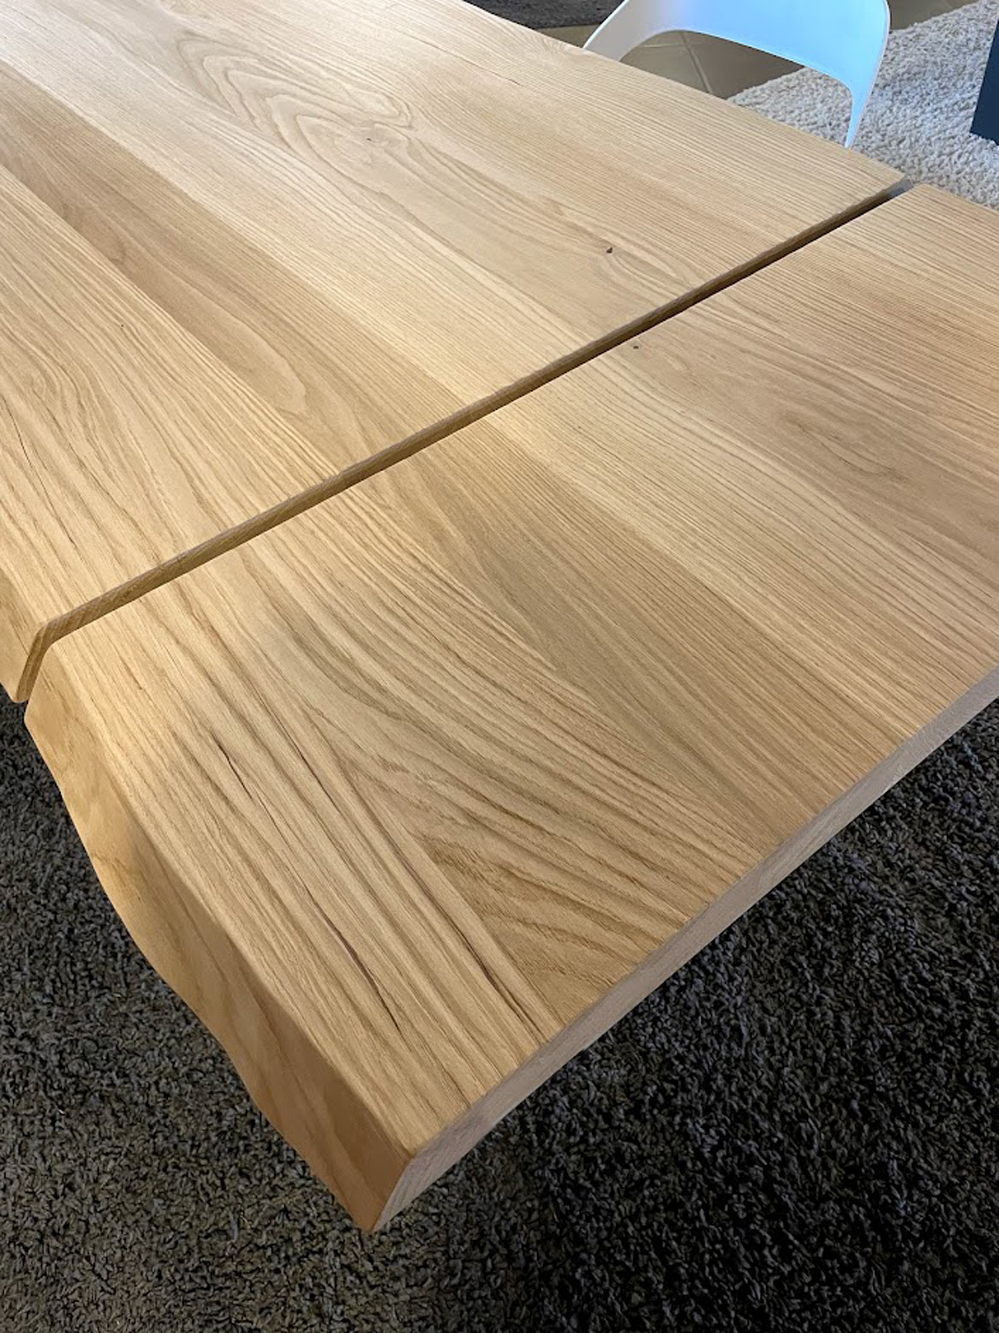 Tavolo da pranzo allungabile in legno di rovere massello 160x90 fino a 240  cm - XLAB Design